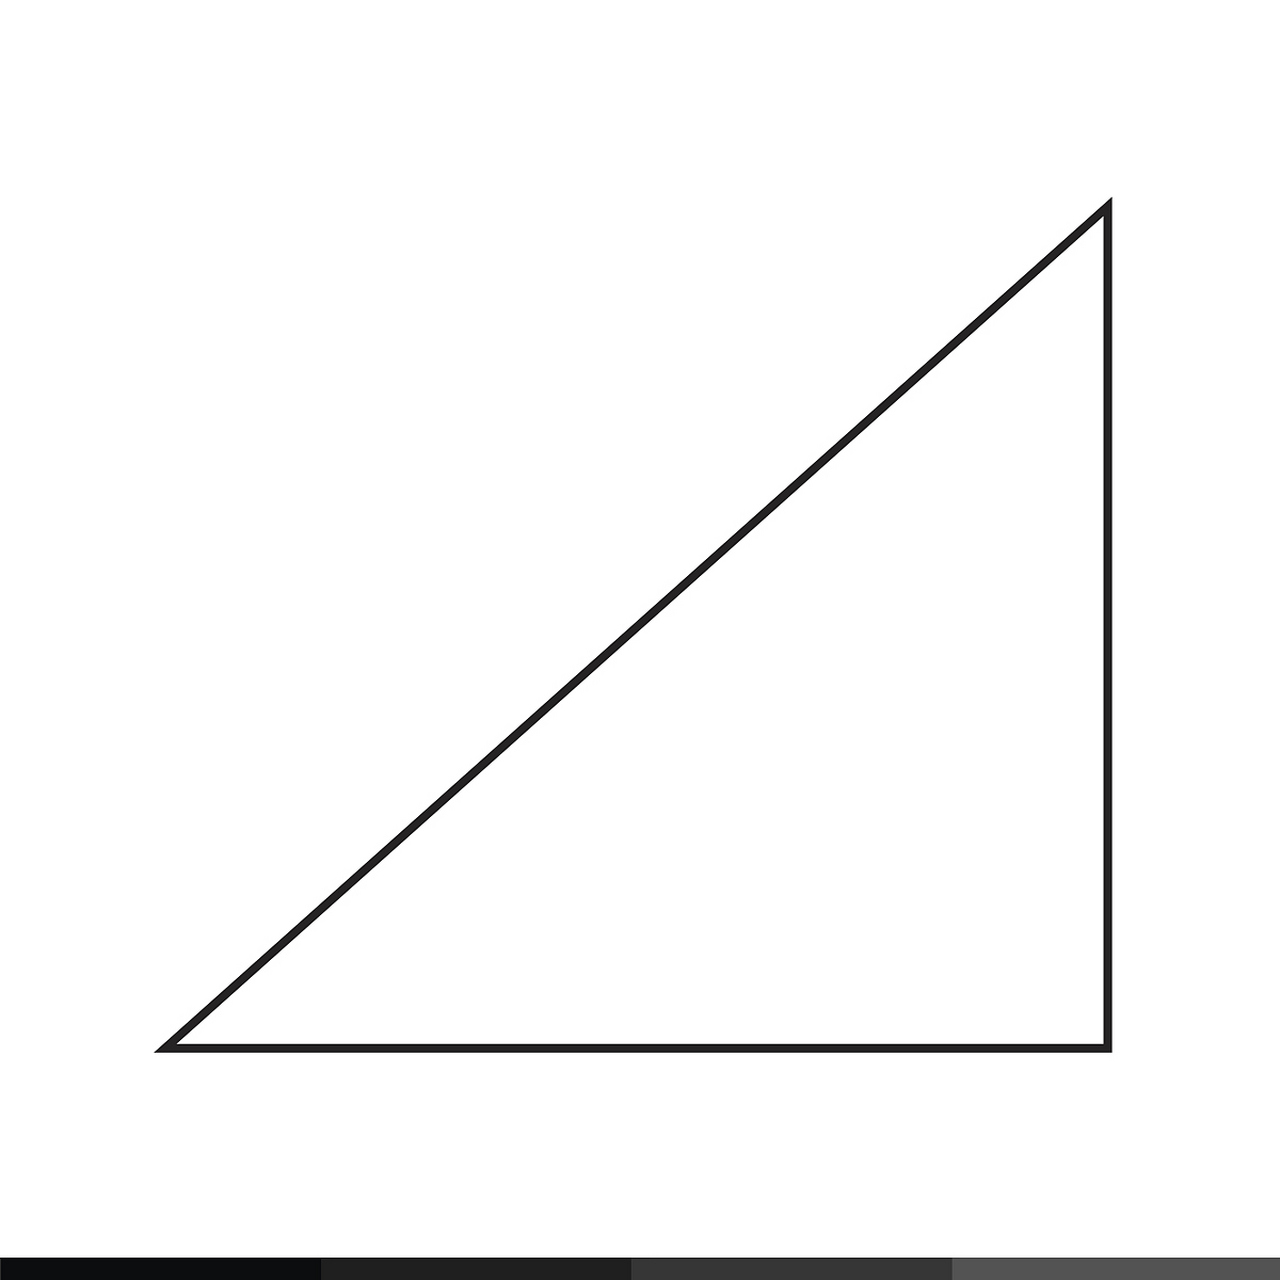 等腰直角三角形图案图片